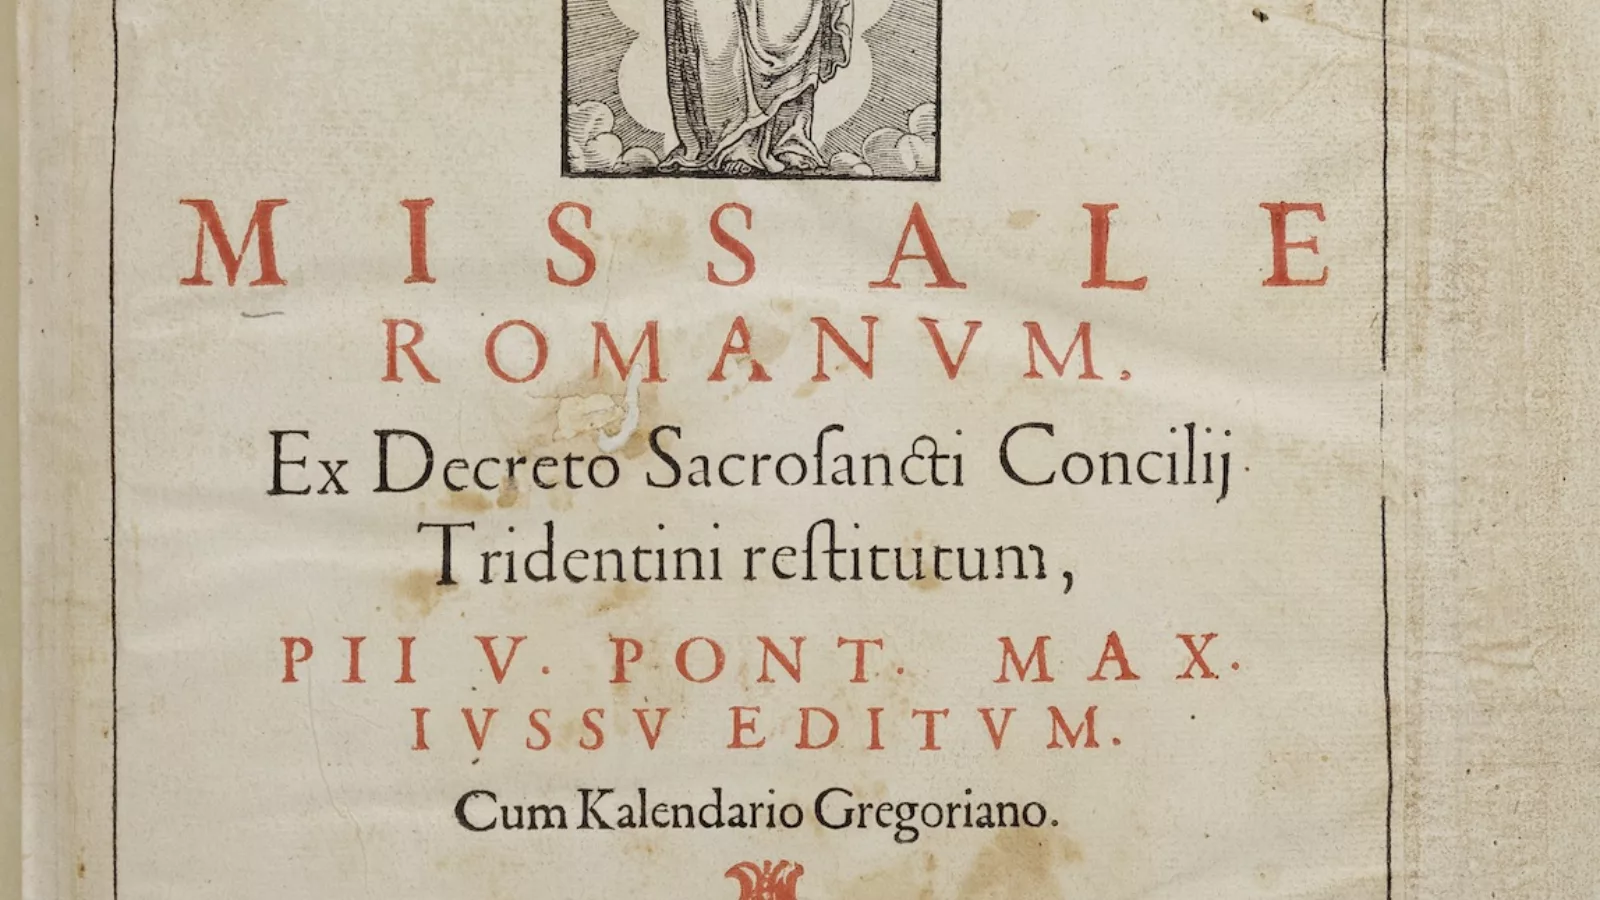 Frontispiece. Missale Romanum. Venice, 1584.